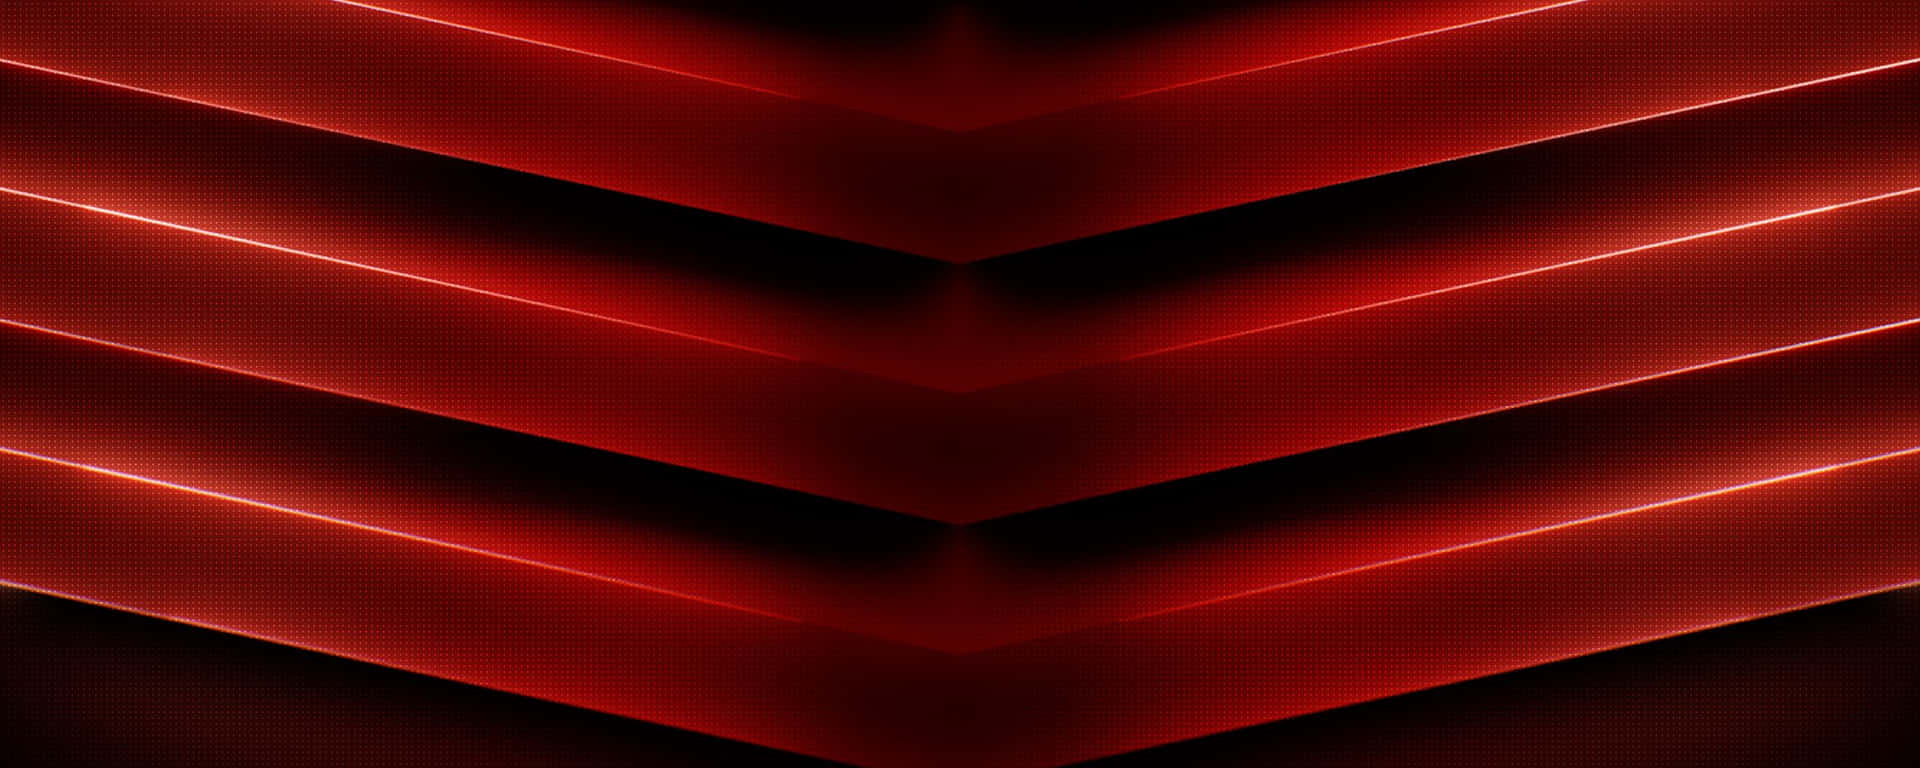 Vförmige Metalle In Rot, Ultra Wide Hd Wallpaper